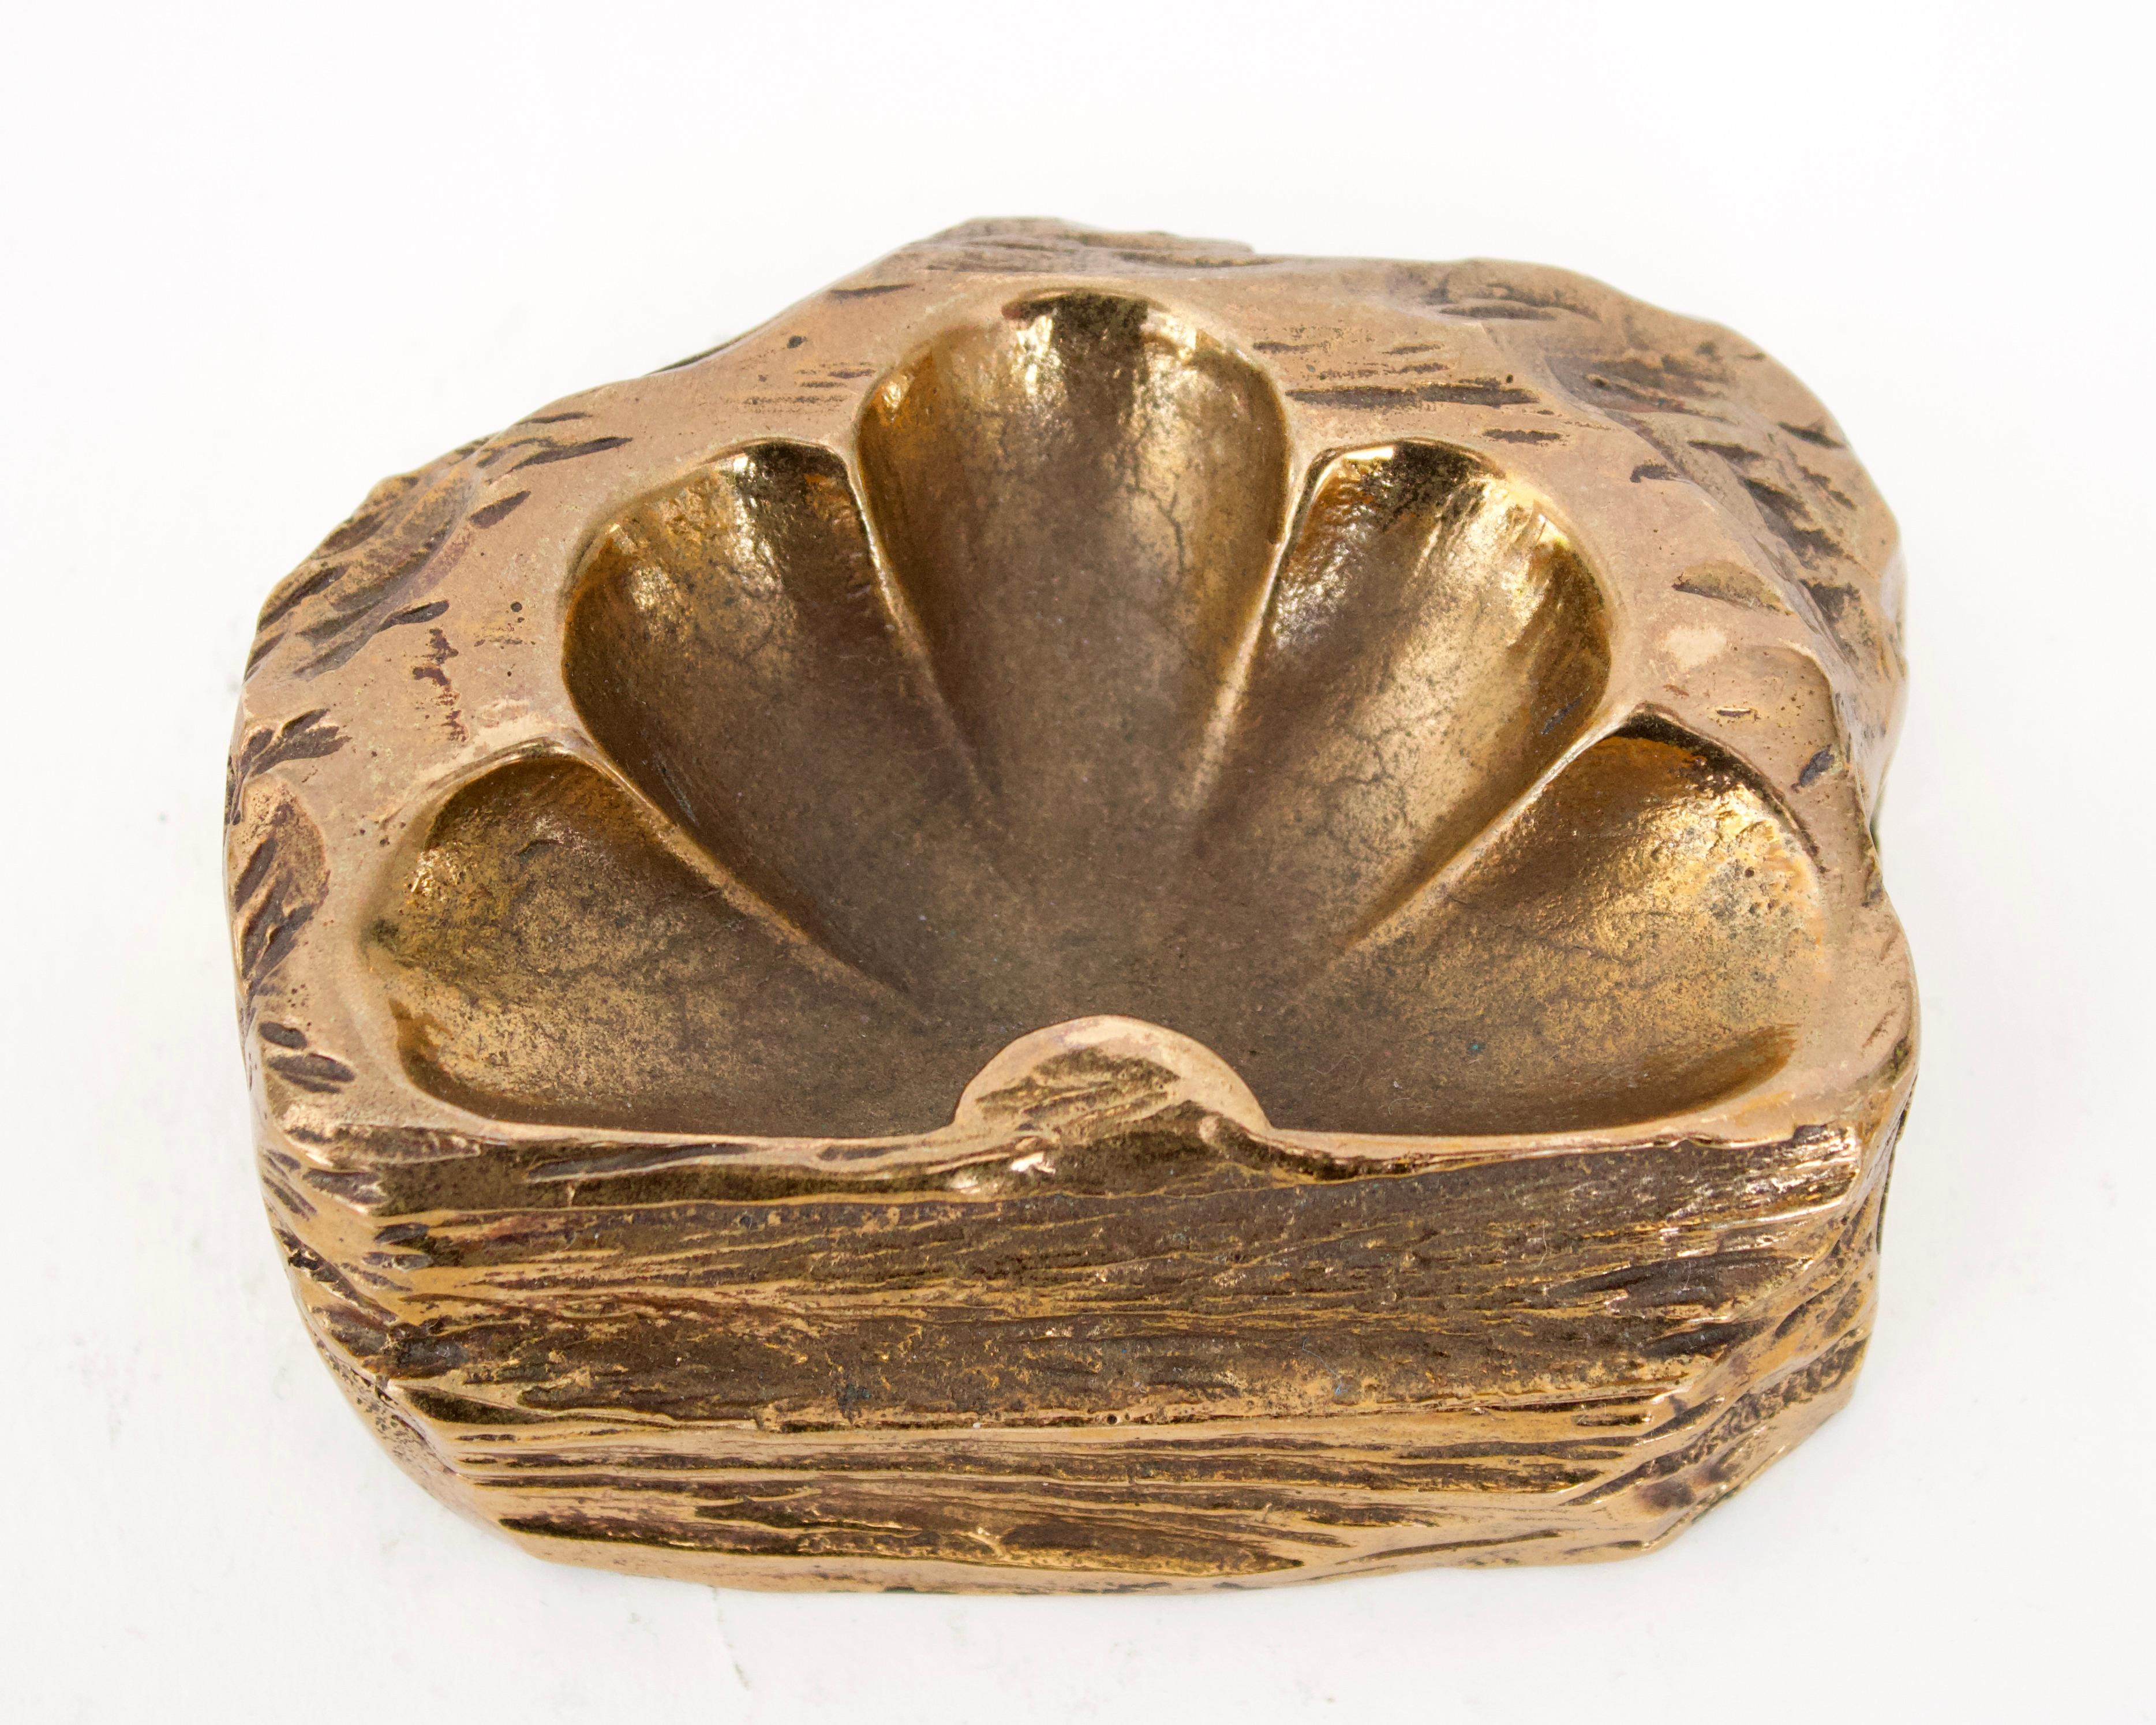 Eine bronzene Videopoche oder dekorative Schale der französischen Künstlerin Monique Gerber. Bei diesem Beispiel handelt es sich um eine halbe Blüte, die aus einer sehr skulpturalen, grottenähnlichen Felsform hervorgeht. 
 

